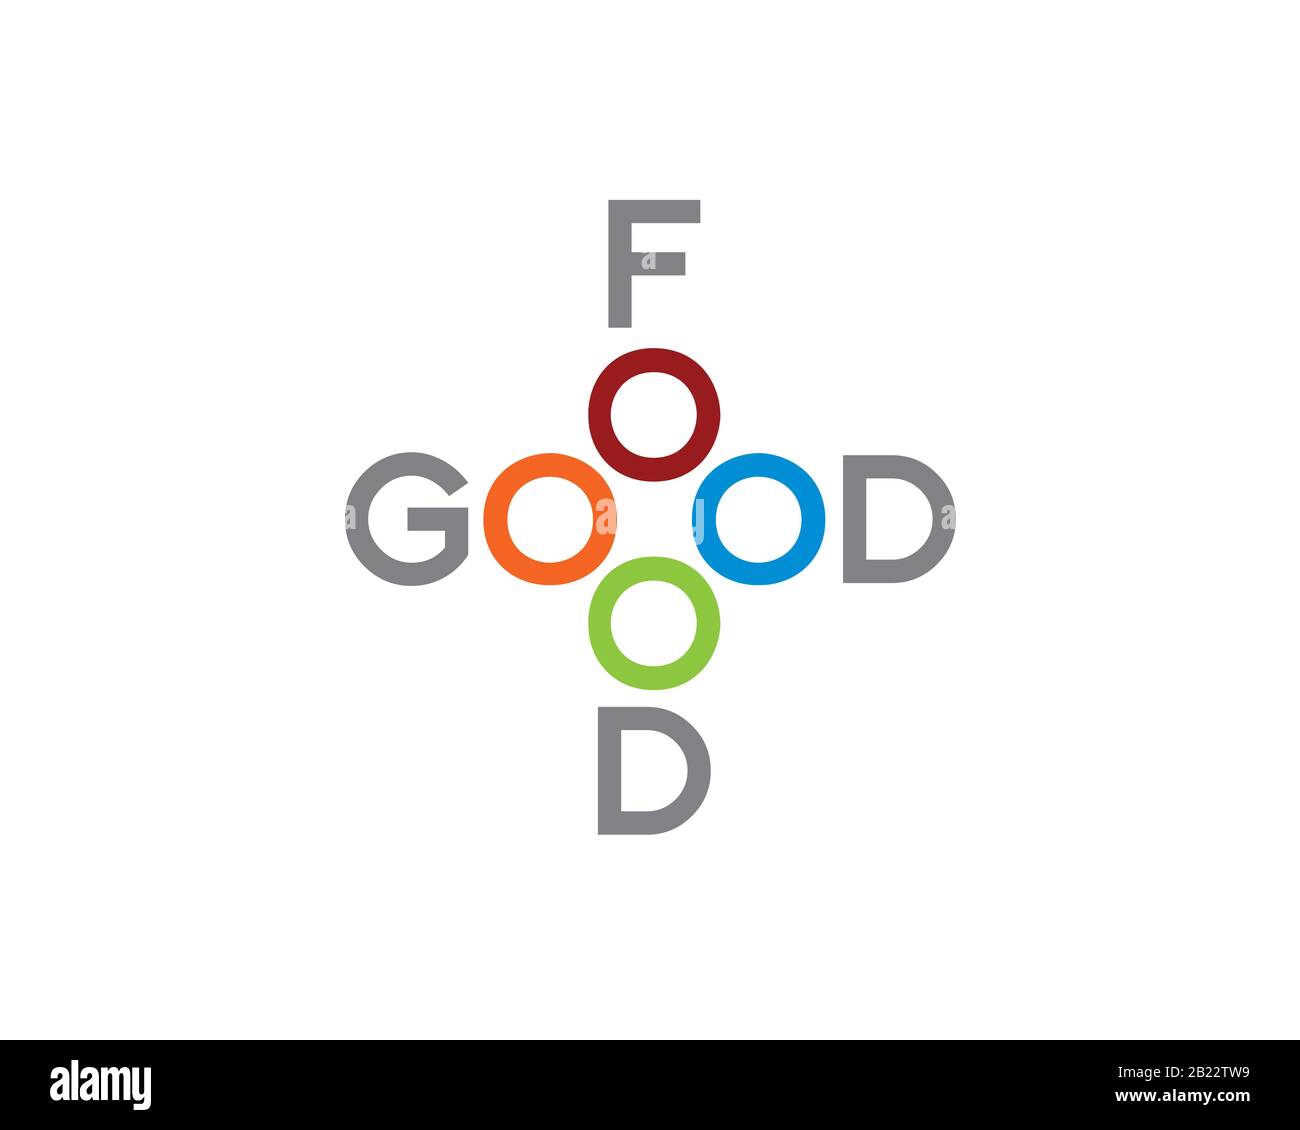 logotipo de buena comida con 4 círculos de colores como salud símbolo de cruz Ilustración del Vector